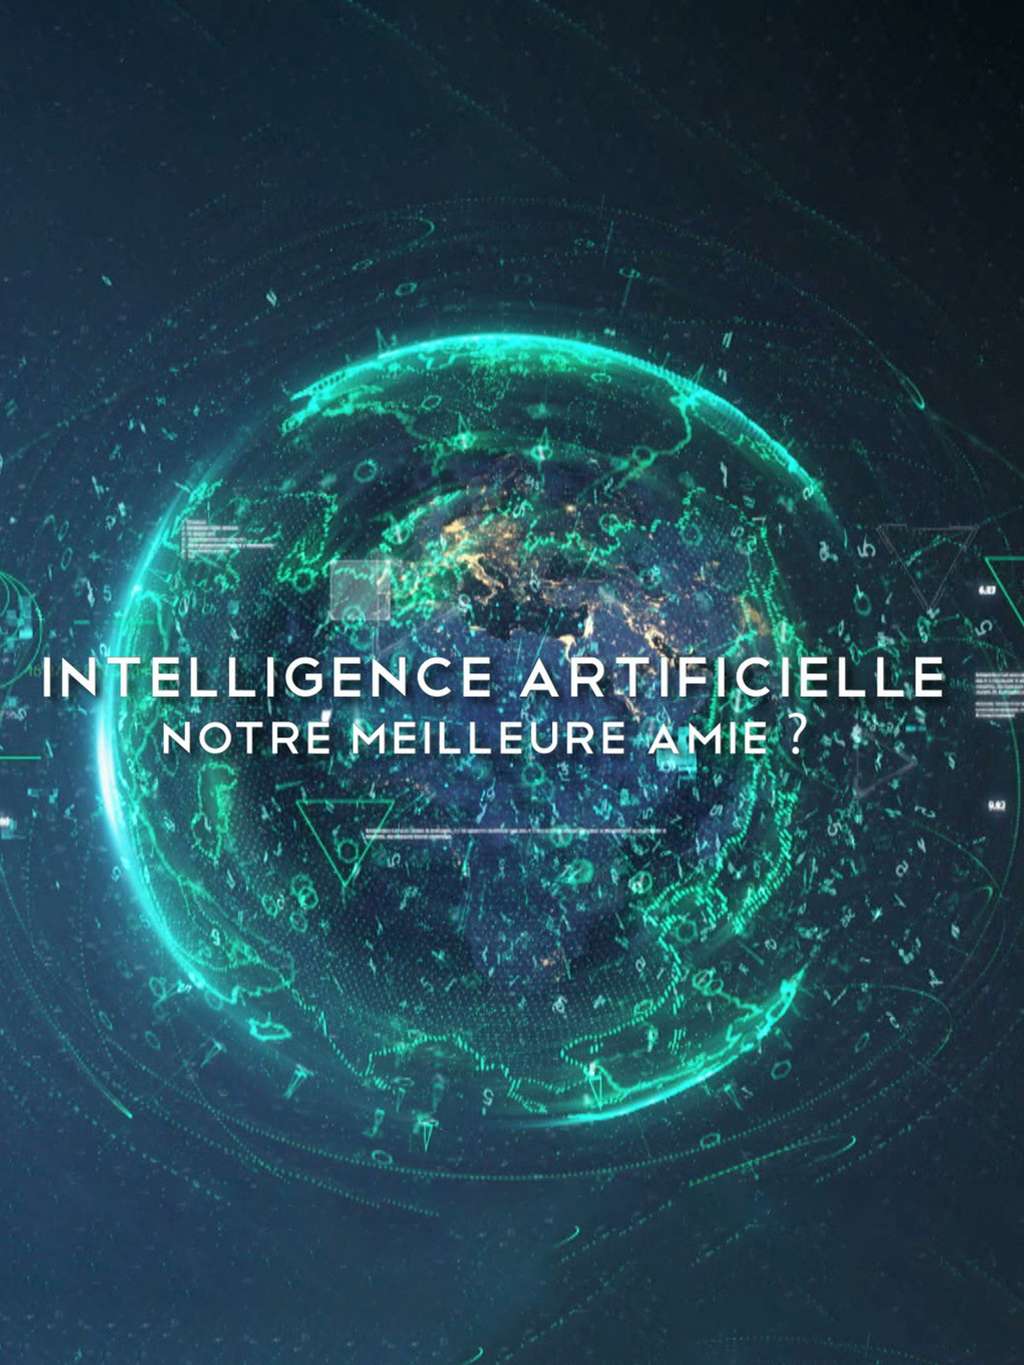 Intelligence artificielle : notre meilleure amie ? © Amazon